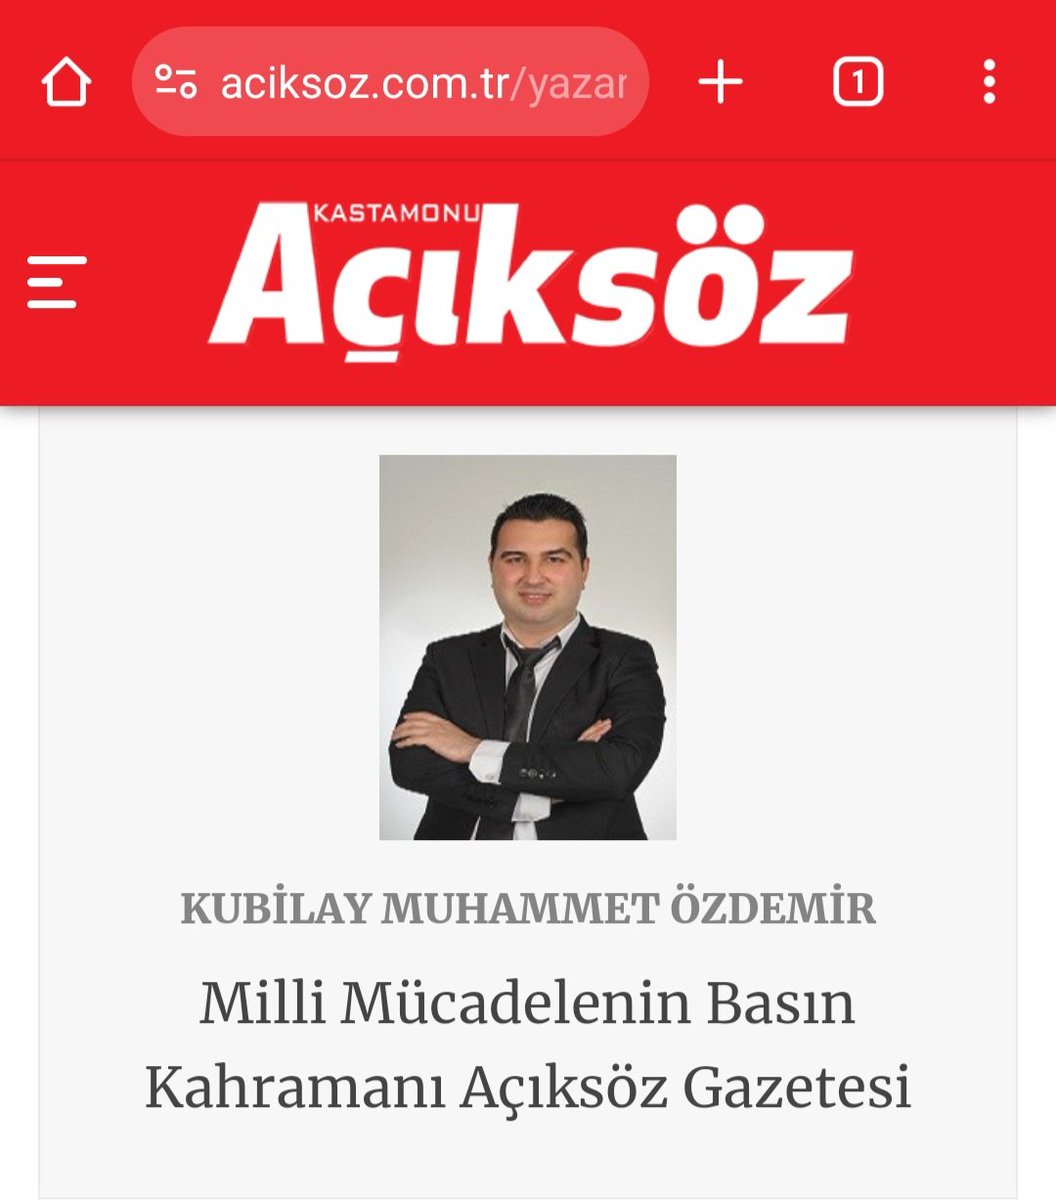 Ne demiştim? İstanbul ve Gaziosmanpaşa ile sınırlı kalmayacağım. Kastamonu'da çıkan bir tarihi gazete olan ve milli mücadeleyi destekleyen Açıksöz gazetesinin tarihini ve milli mücadeleye olan katkılarını kaleme aldım.